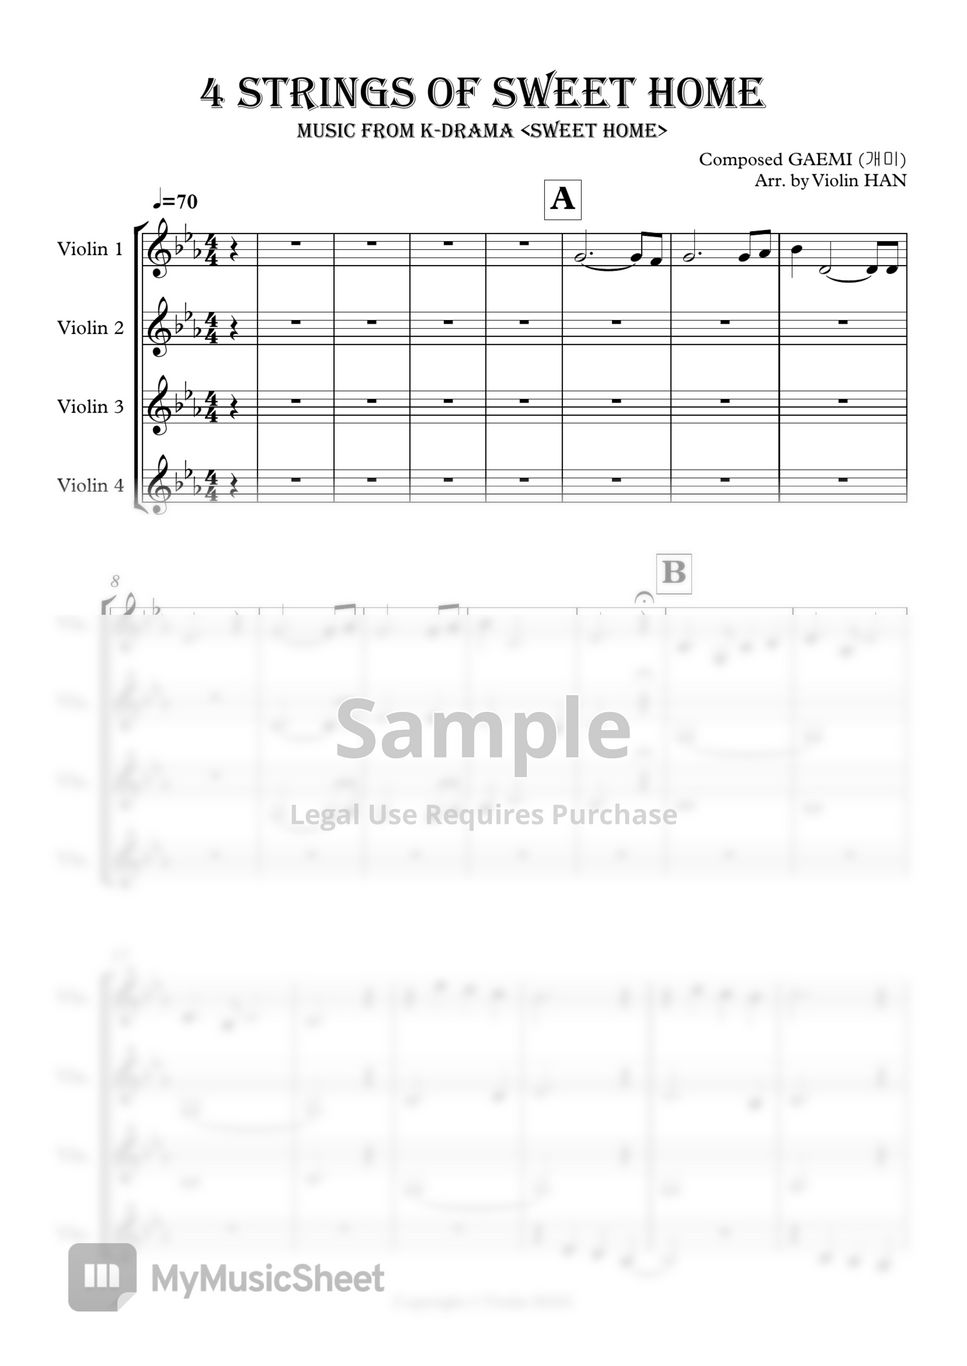 개미(GAEMI) - 4 Strings of Sweet Home (스위트홈 OST 4Violin) by Violin HAN